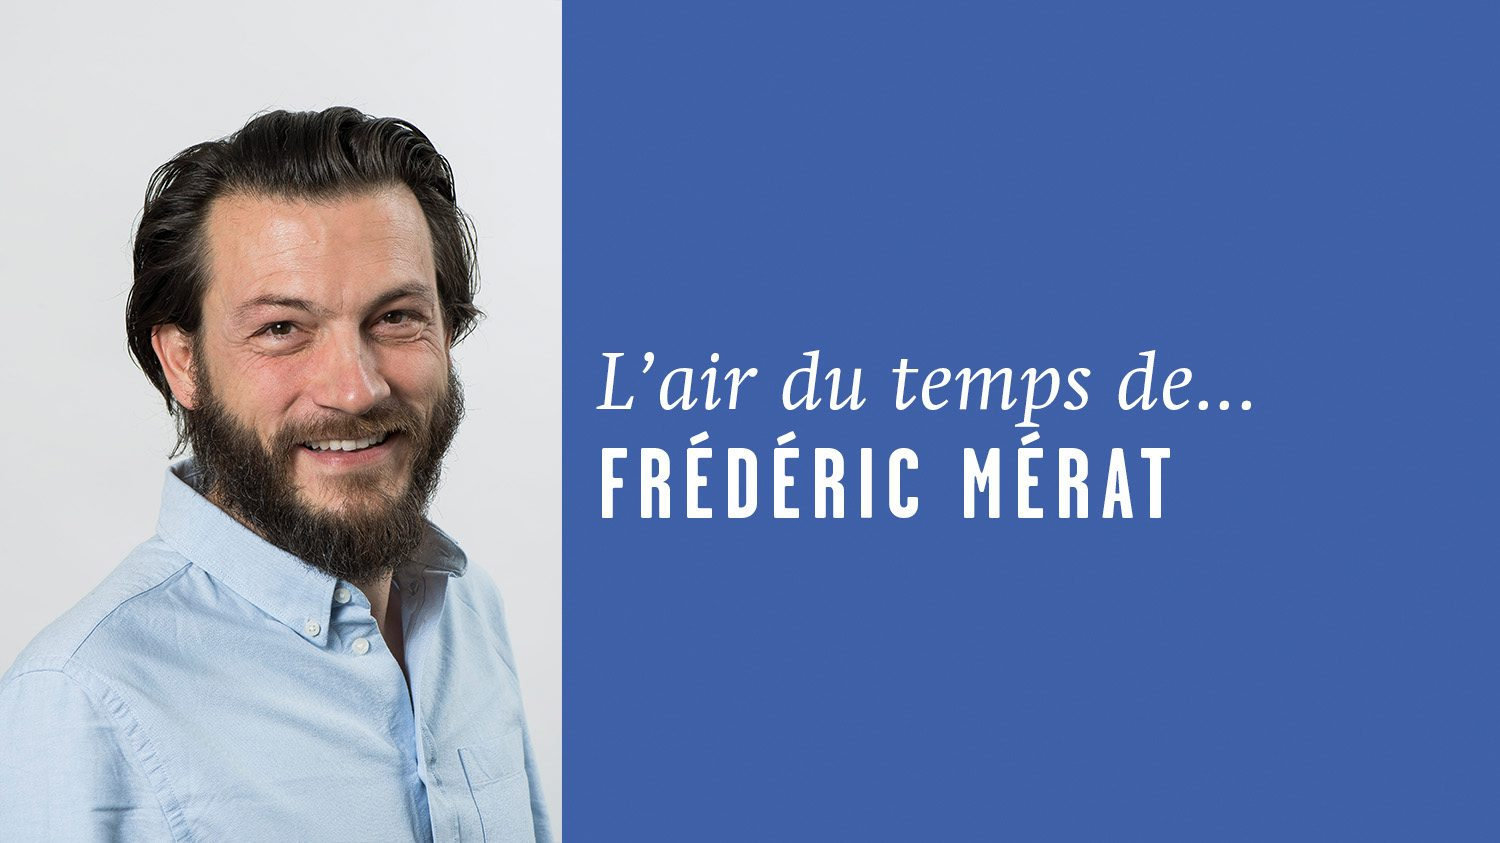 AirDutemps-FredericMerat (3)